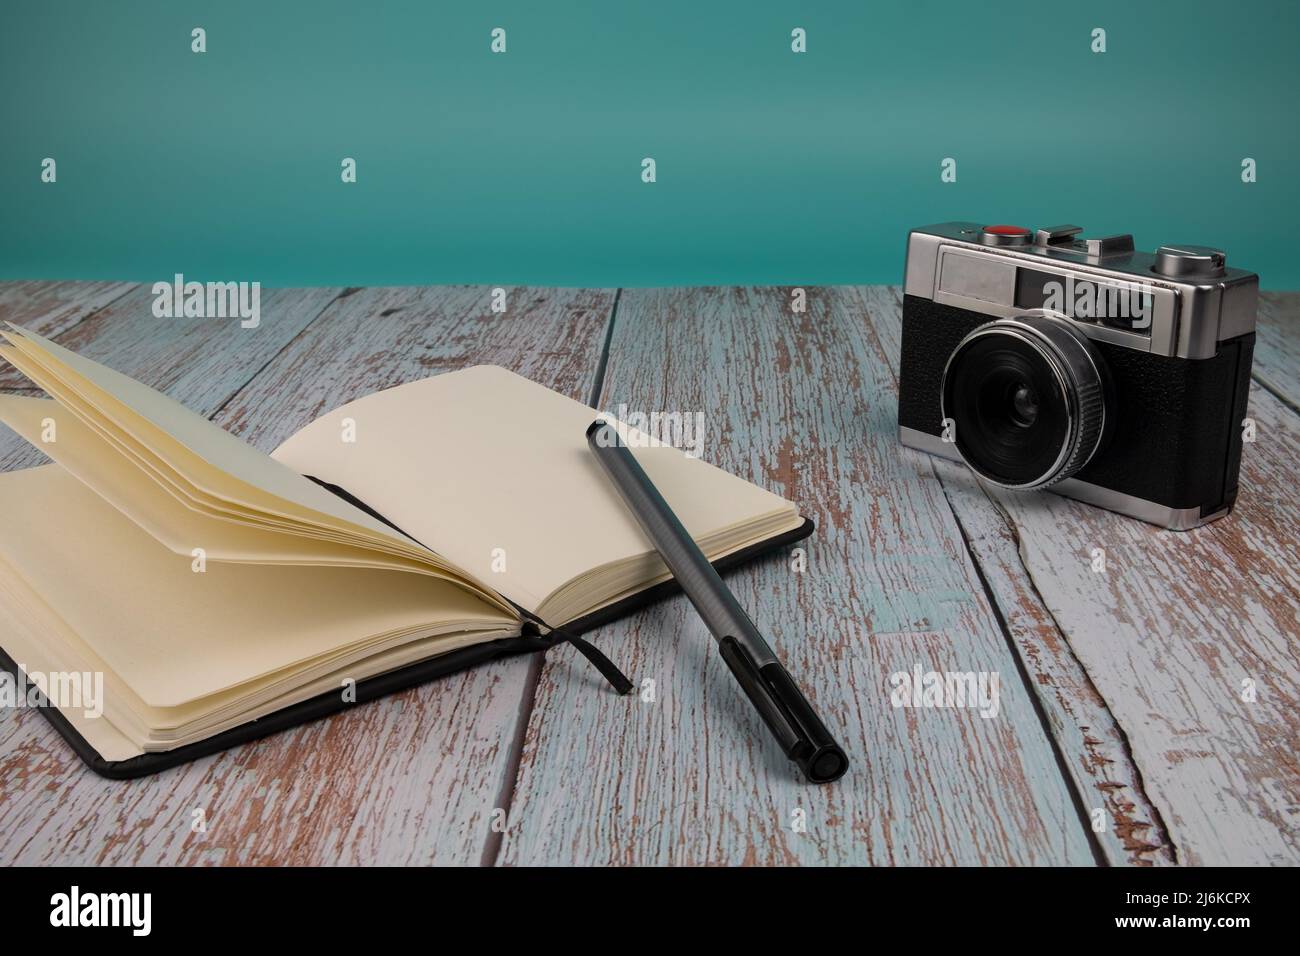 Ordinateur portable avec un stylo et un appareil photo, sur une table en bois avec un fond bleu clair. Concept temps libre. Banque D'Images